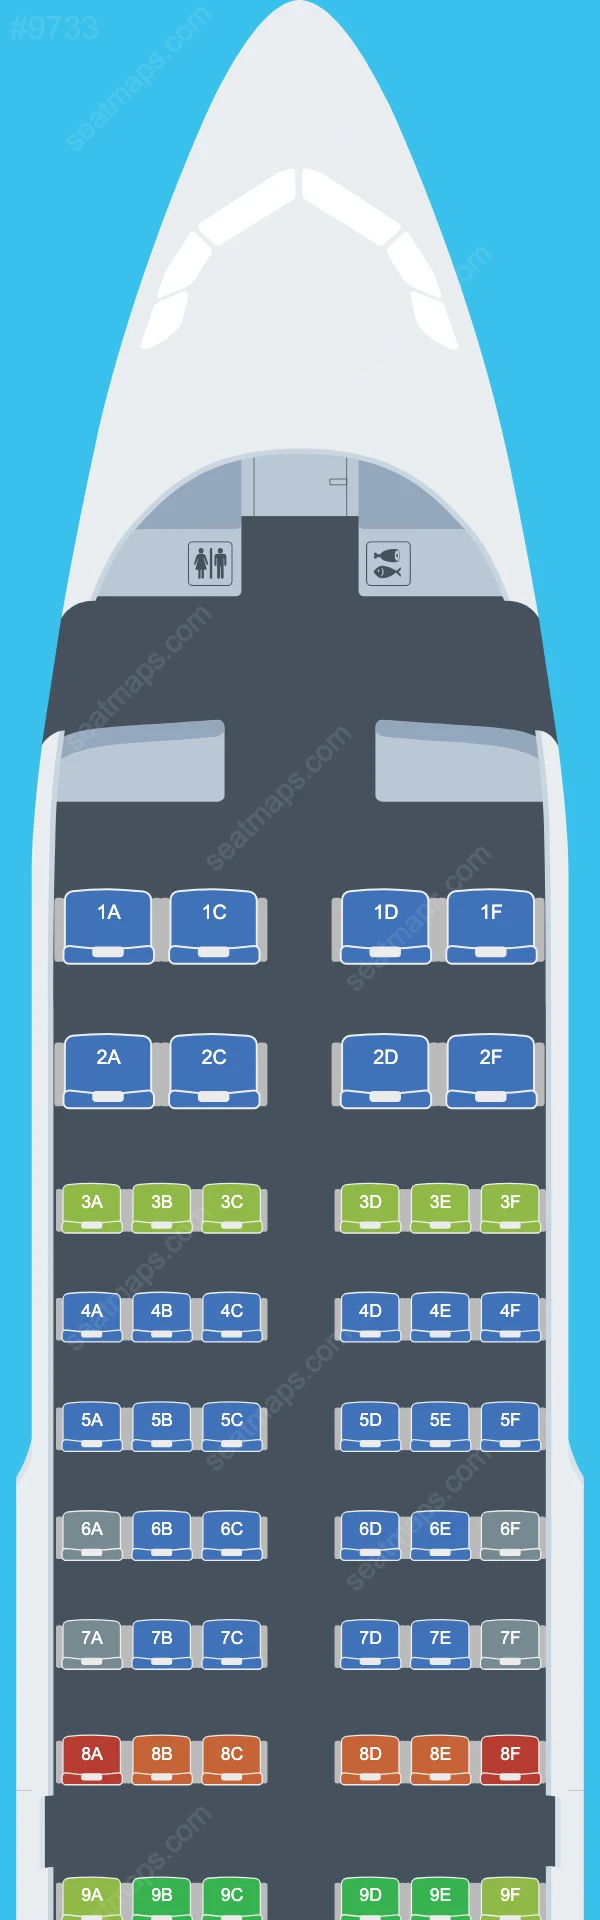 Схема салонов Aeroflot в самолетах Airbus A319 A319-100